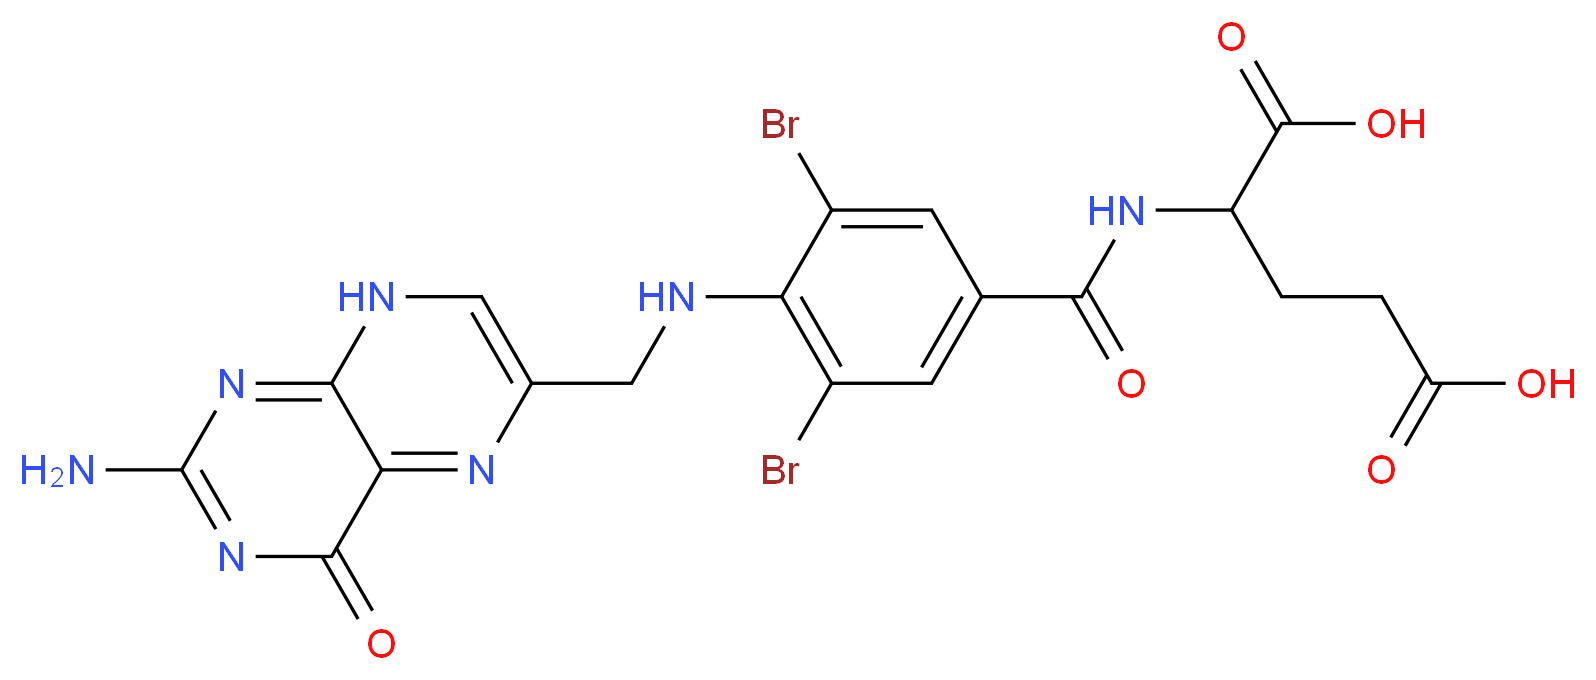 2536-53-0 molecular structure